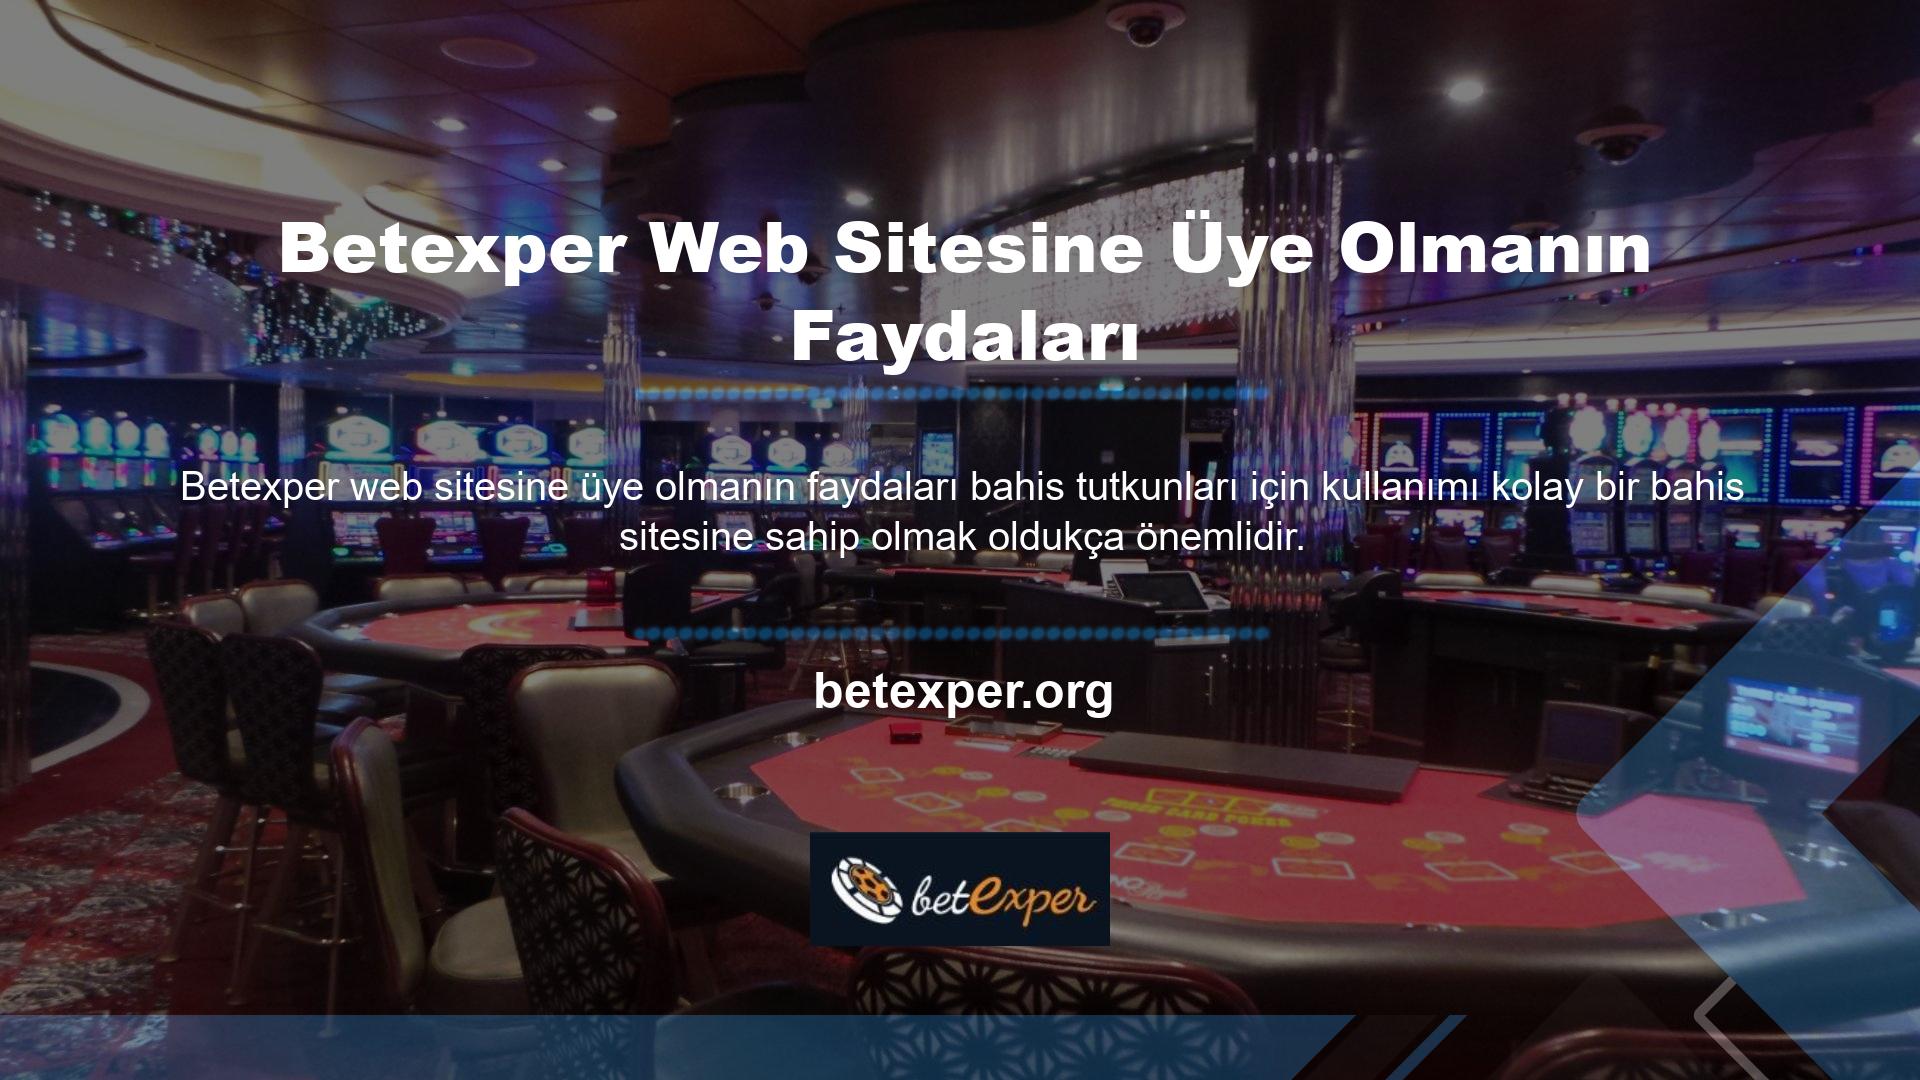 Betexper sitesi, satış ortaklığı ve kullanım açısından en iyi sonuçları veren birkaç siteden biridir